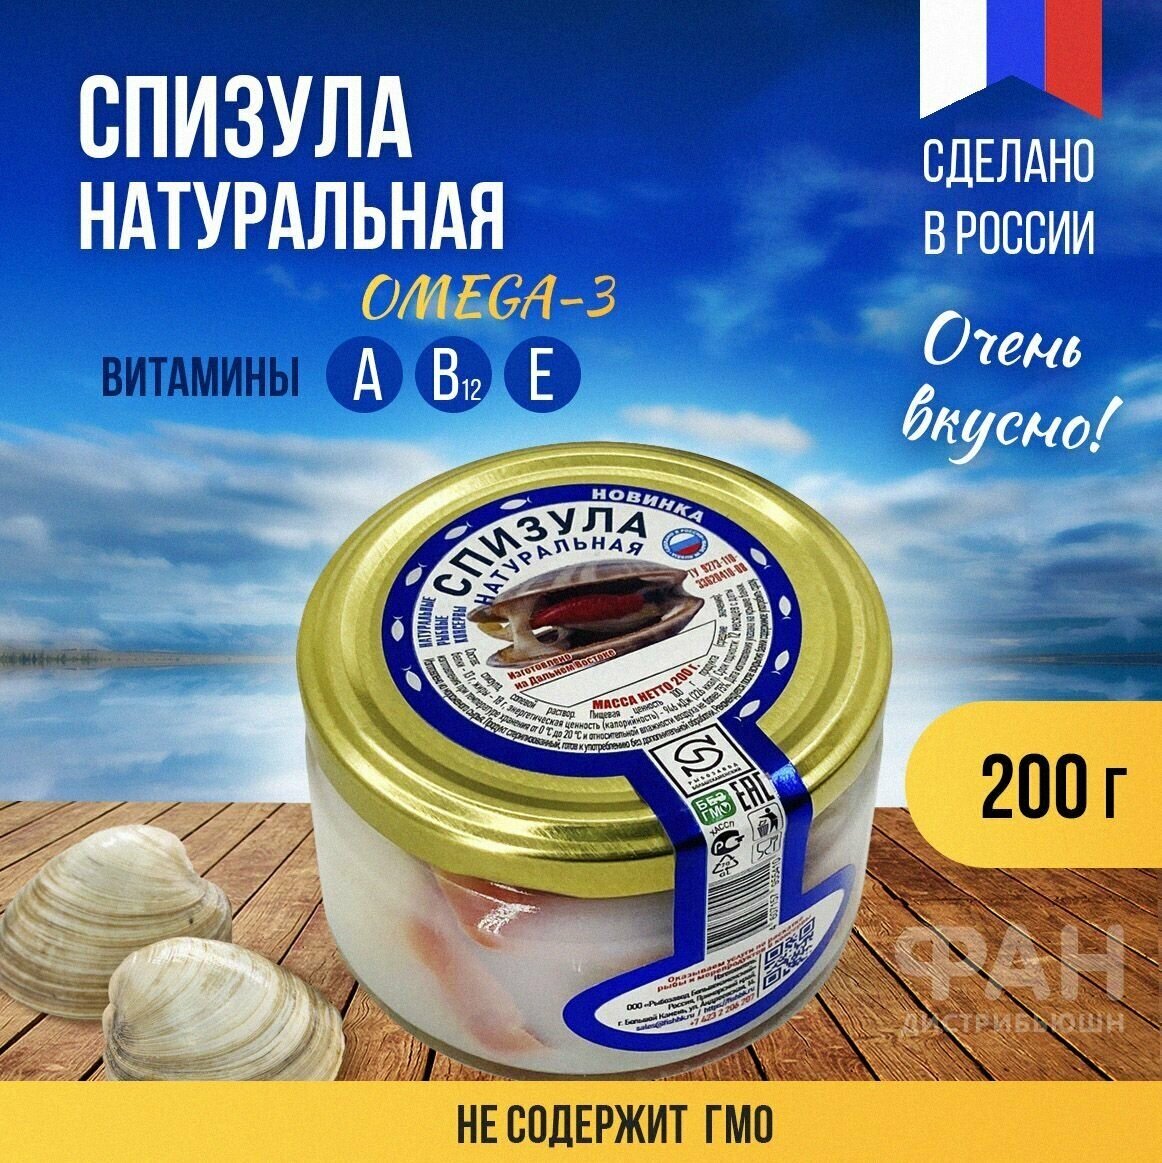 Консервы Рыбозавод Большекаменский "Спизула натуральная", 200 гр